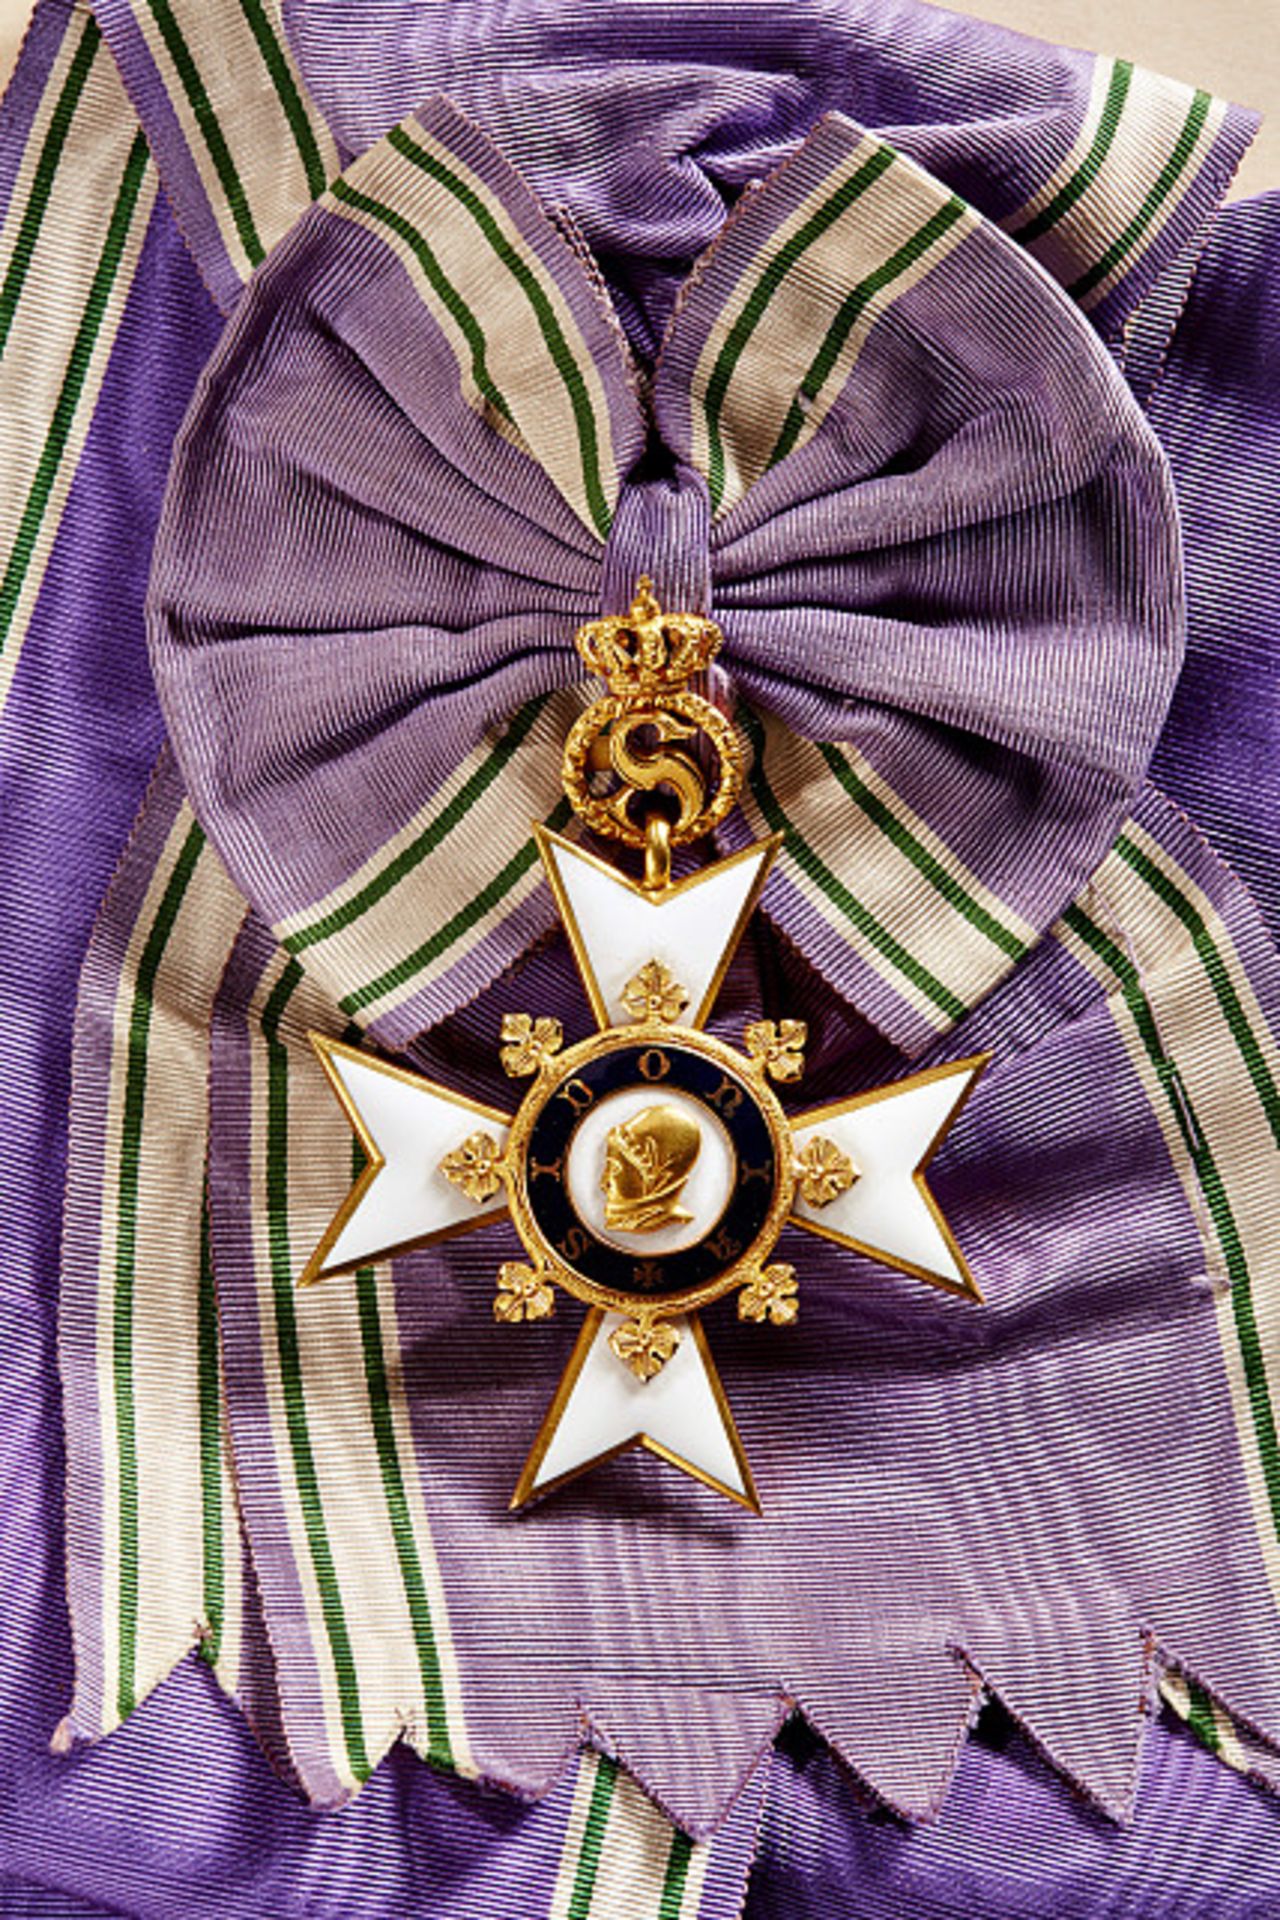 KÖNIGREICH SACHSEN - SIDONIEN-ORDEN : Großes Ordenskreuz für außerordentliche Verdienste (Großkreuz)